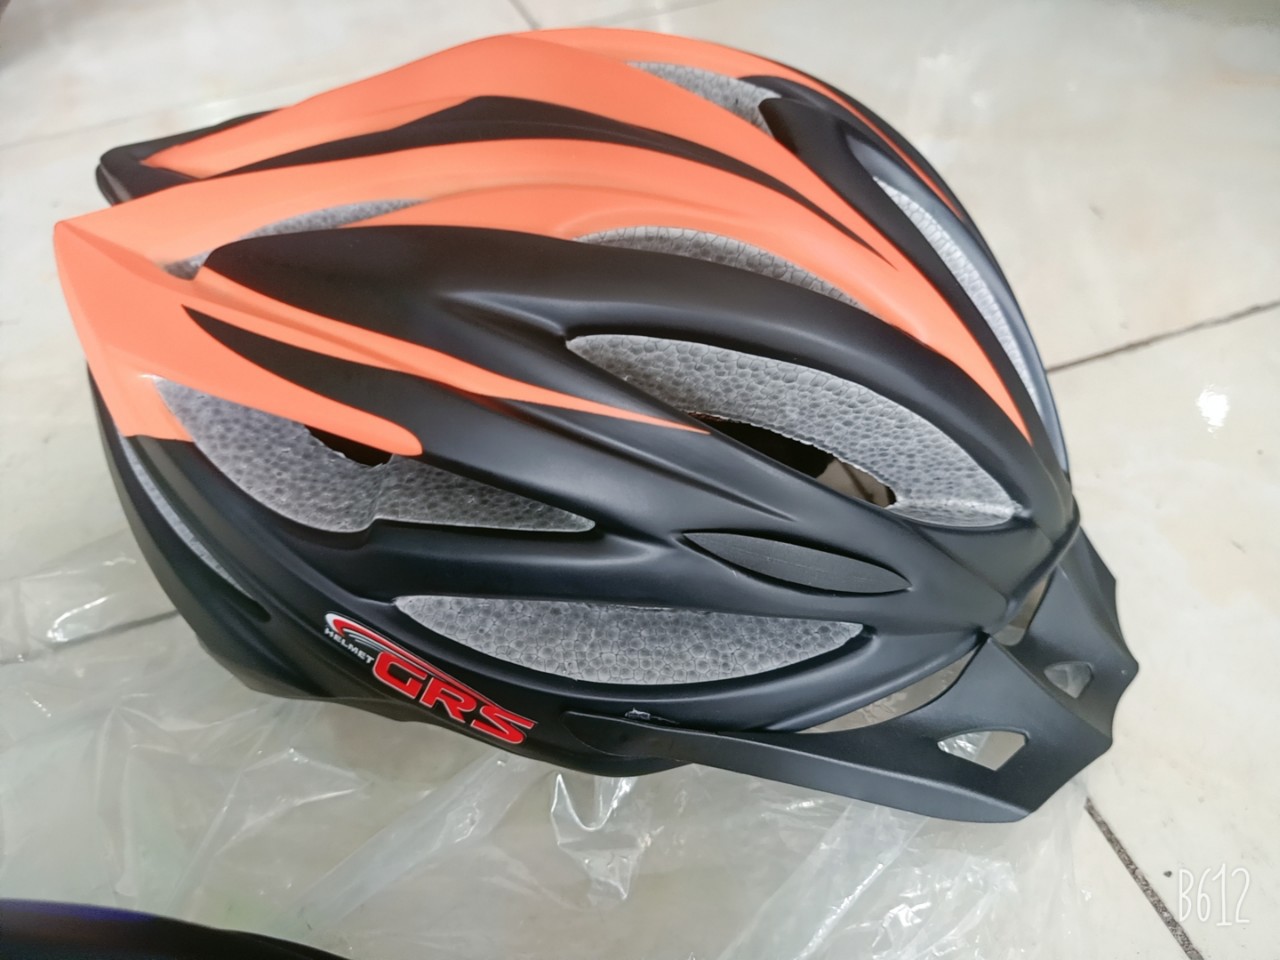 CÓ VIDEO - nón bảo hiểm xe đạp thể thao - mũ bảo hiểm xe đạp thể thao chính hãng GRS